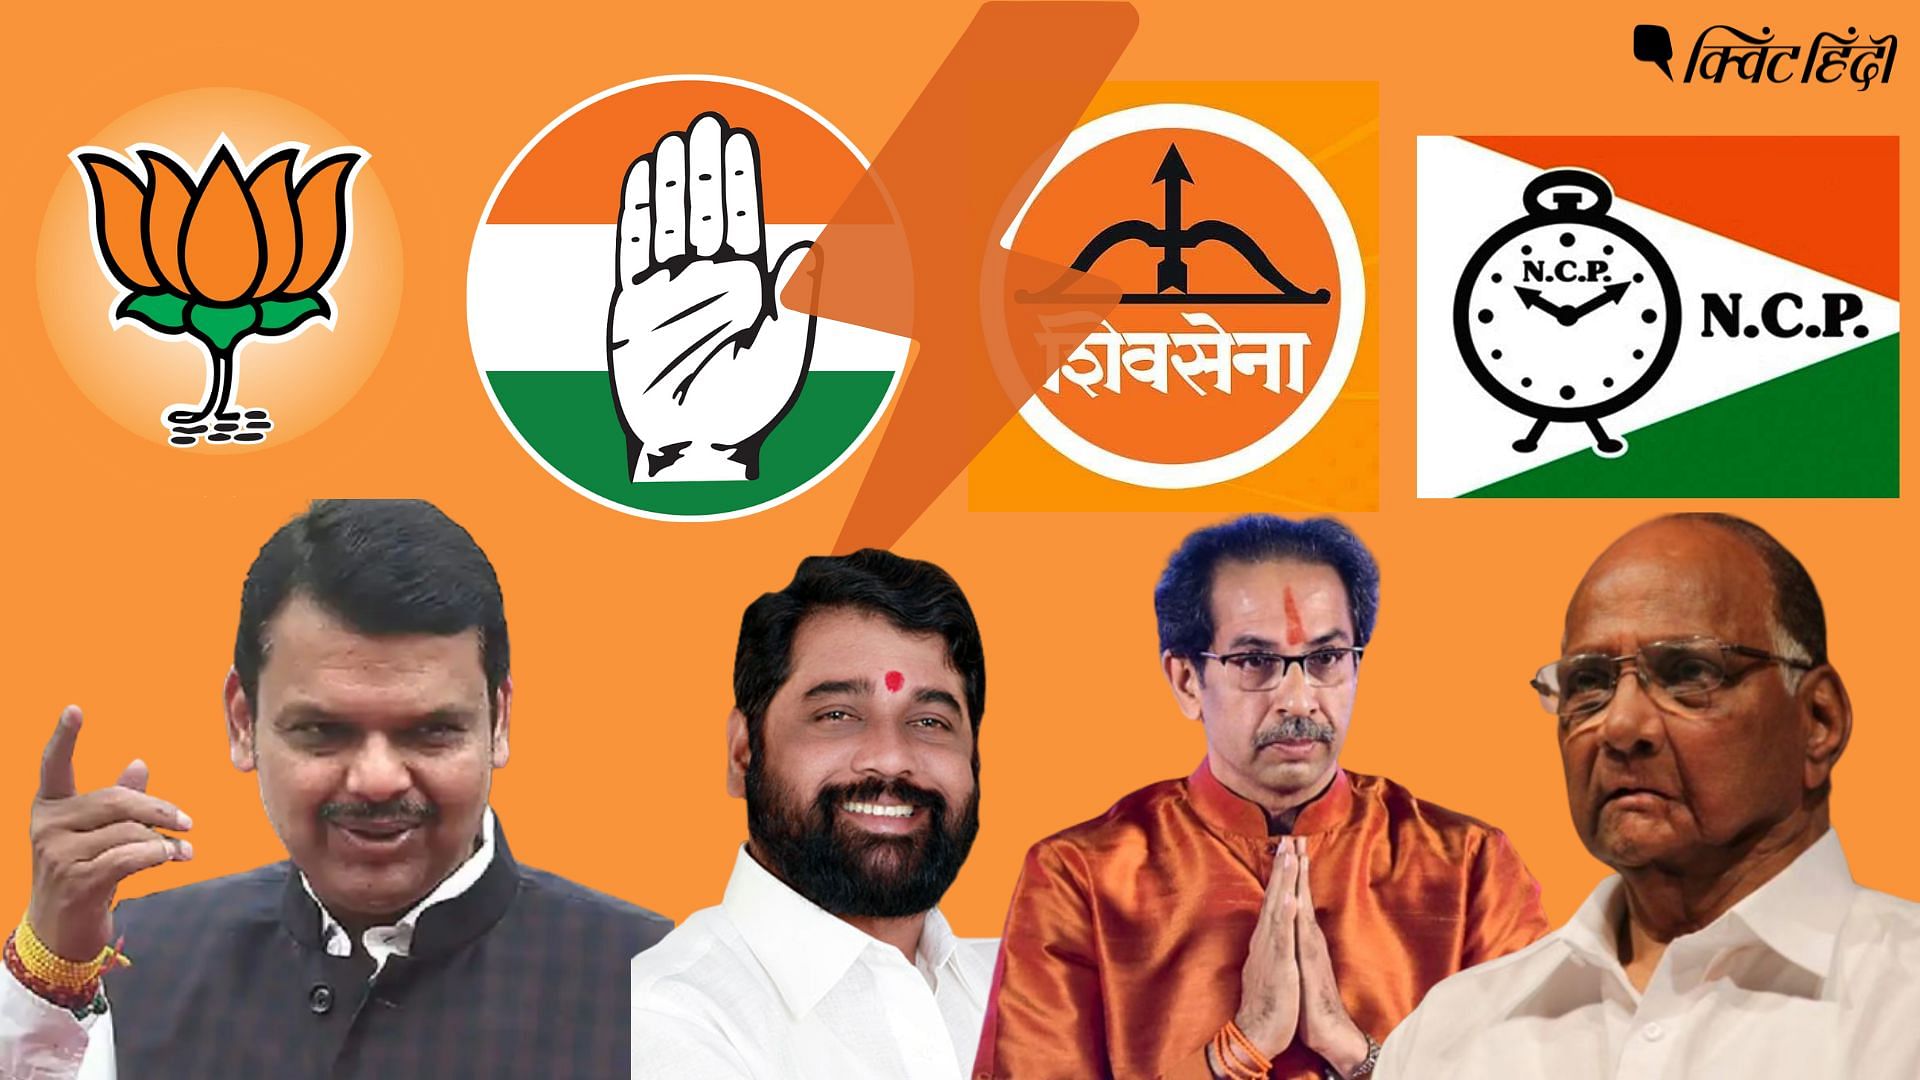 <div class="paragraphs"><p>Maharashtra Politics: BJP-शिवसेना की लड़ाई, कौन-किसको नीचा दिखा रहा है?</p></div>